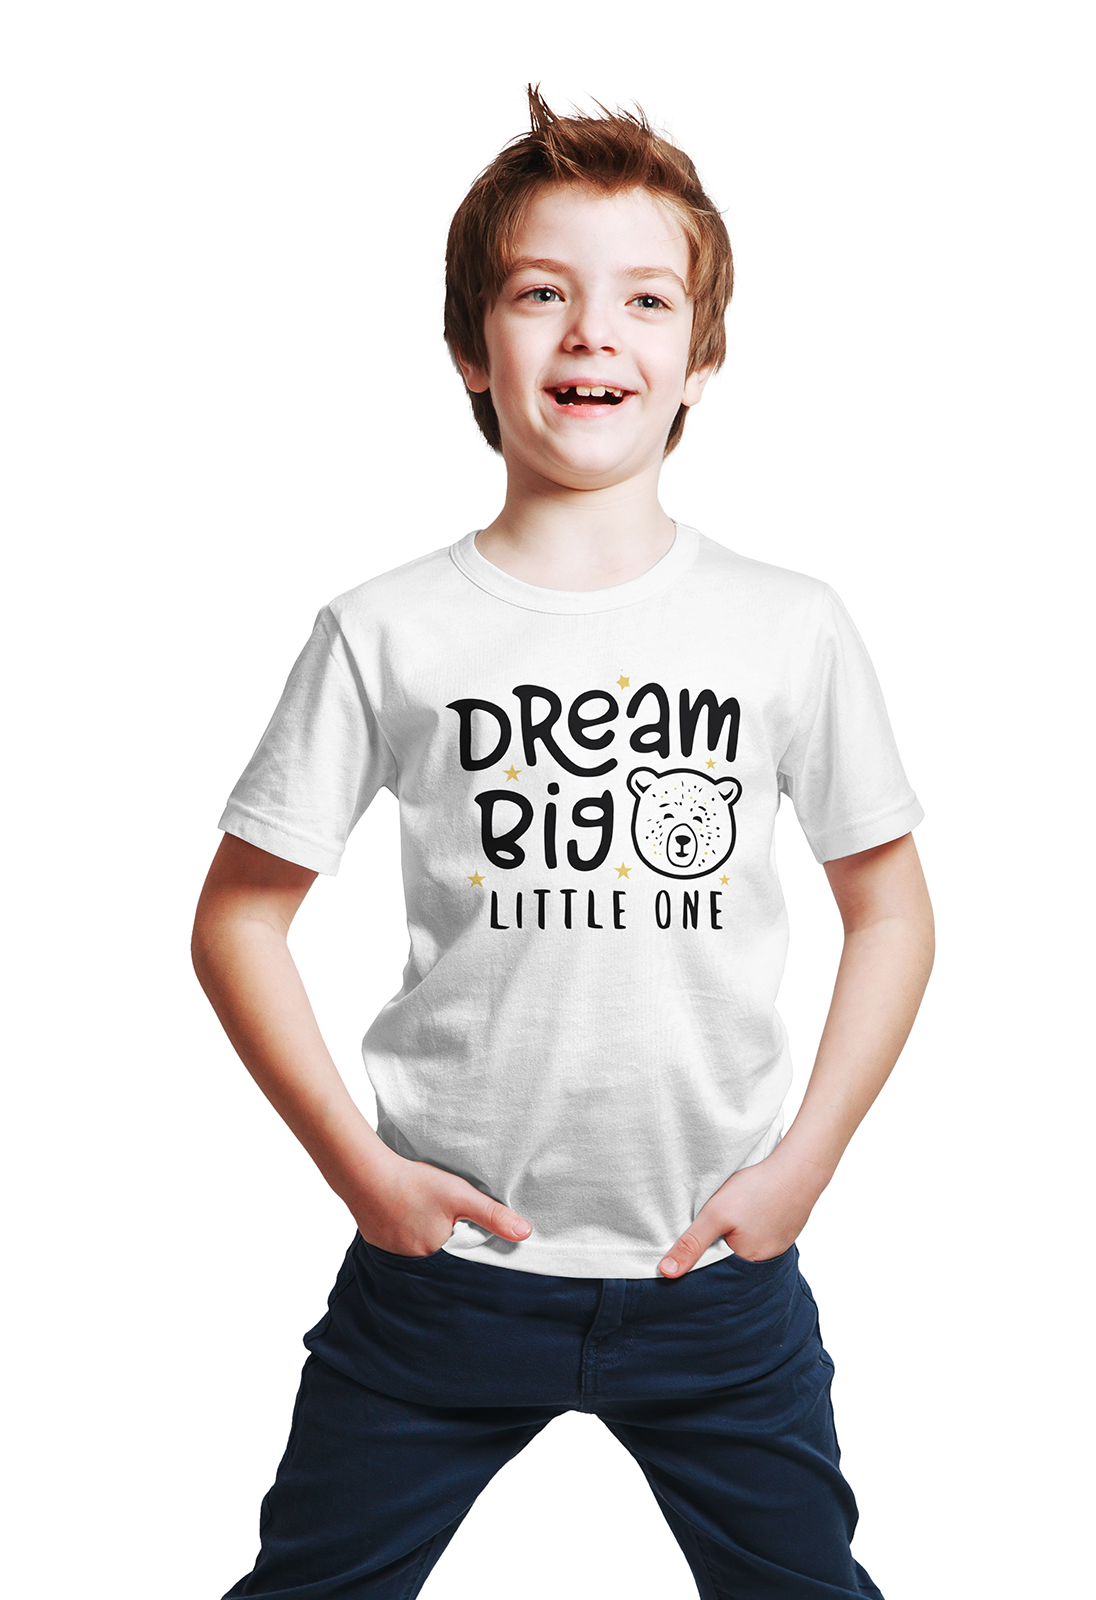 Dream Big - Sixth Degree Clothing